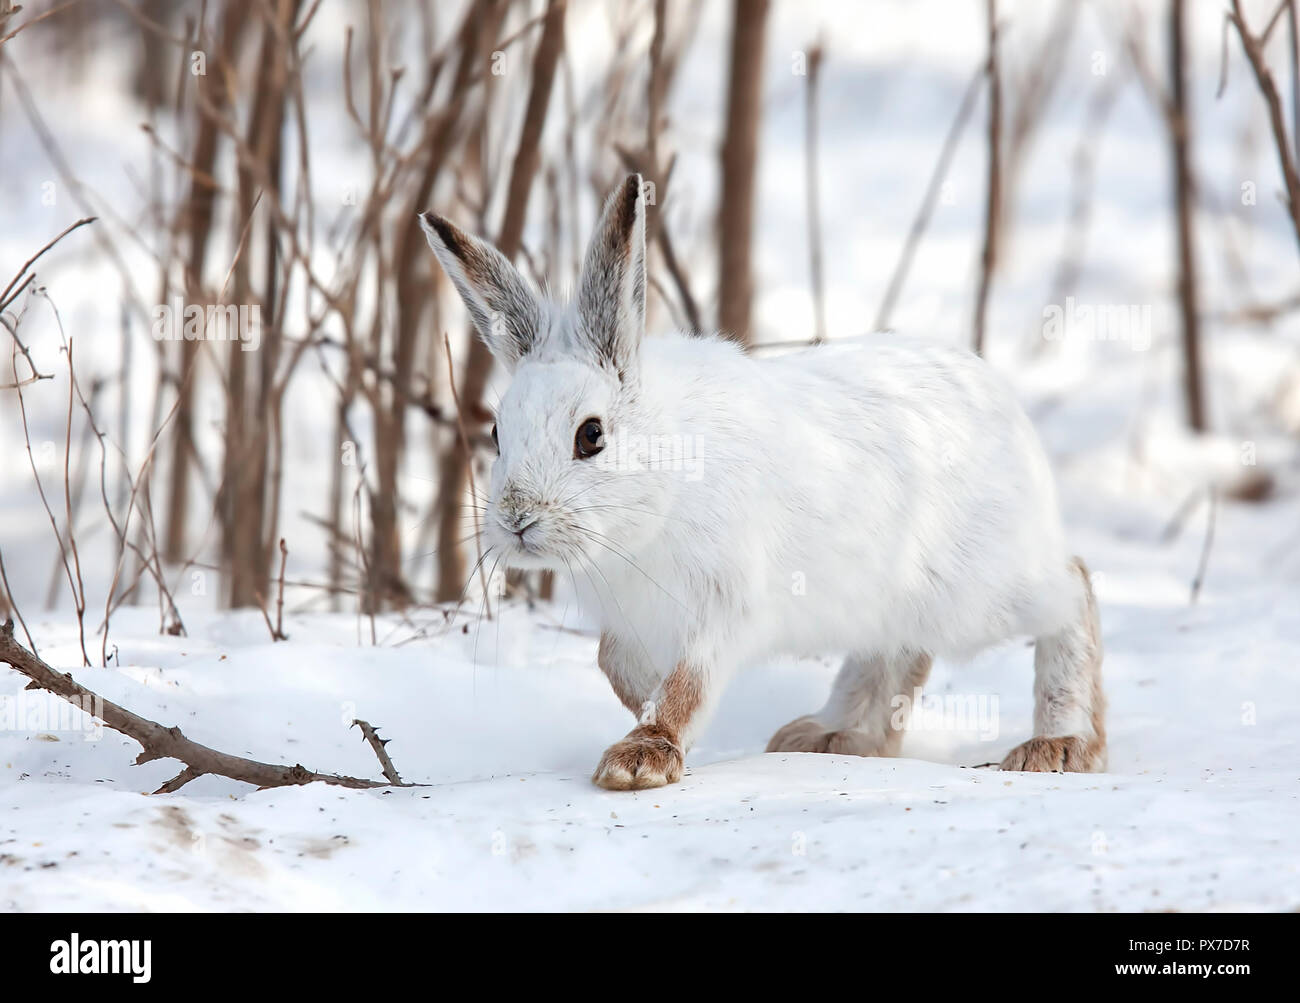 Le lièvre ou diverses espèces de lièvre (Lepus americanus) Balade en hiver au Canada Banque D'Images